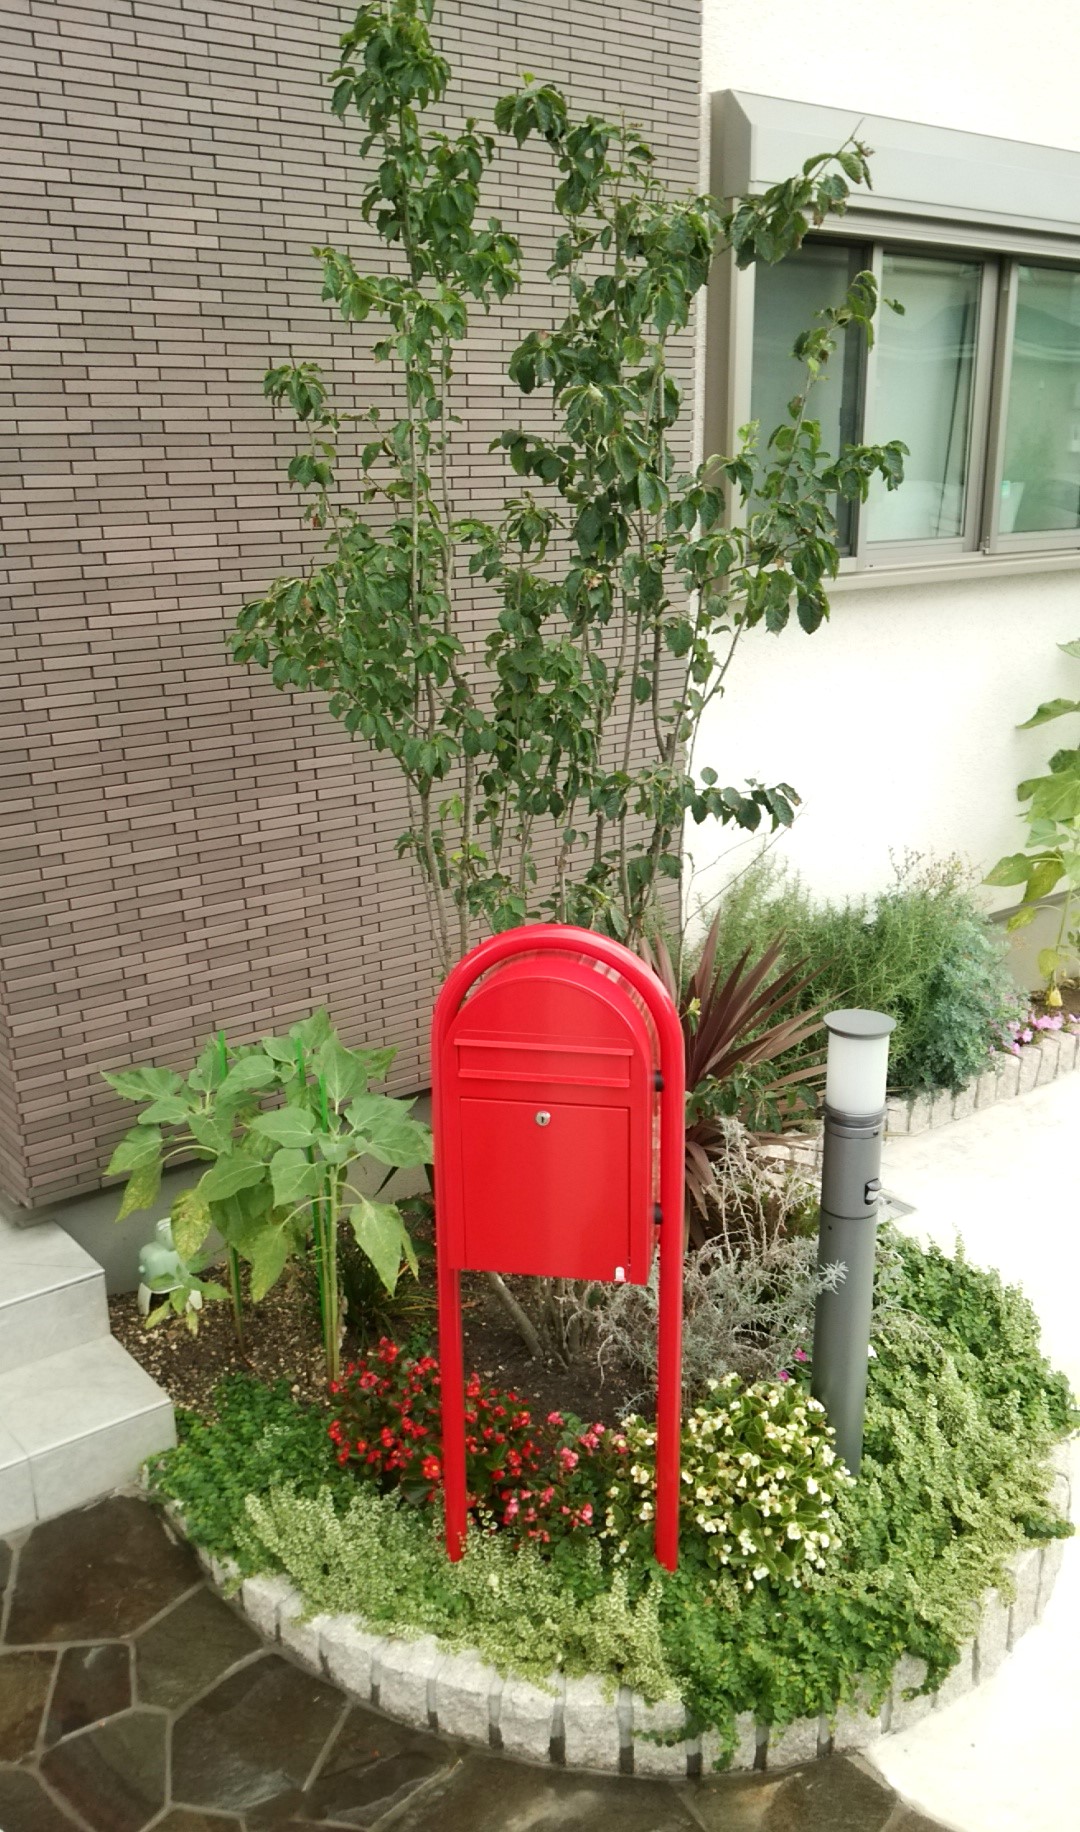 熊谷市のアクセント外壁を活かし色調を統一したナチュラルな外構の植栽1